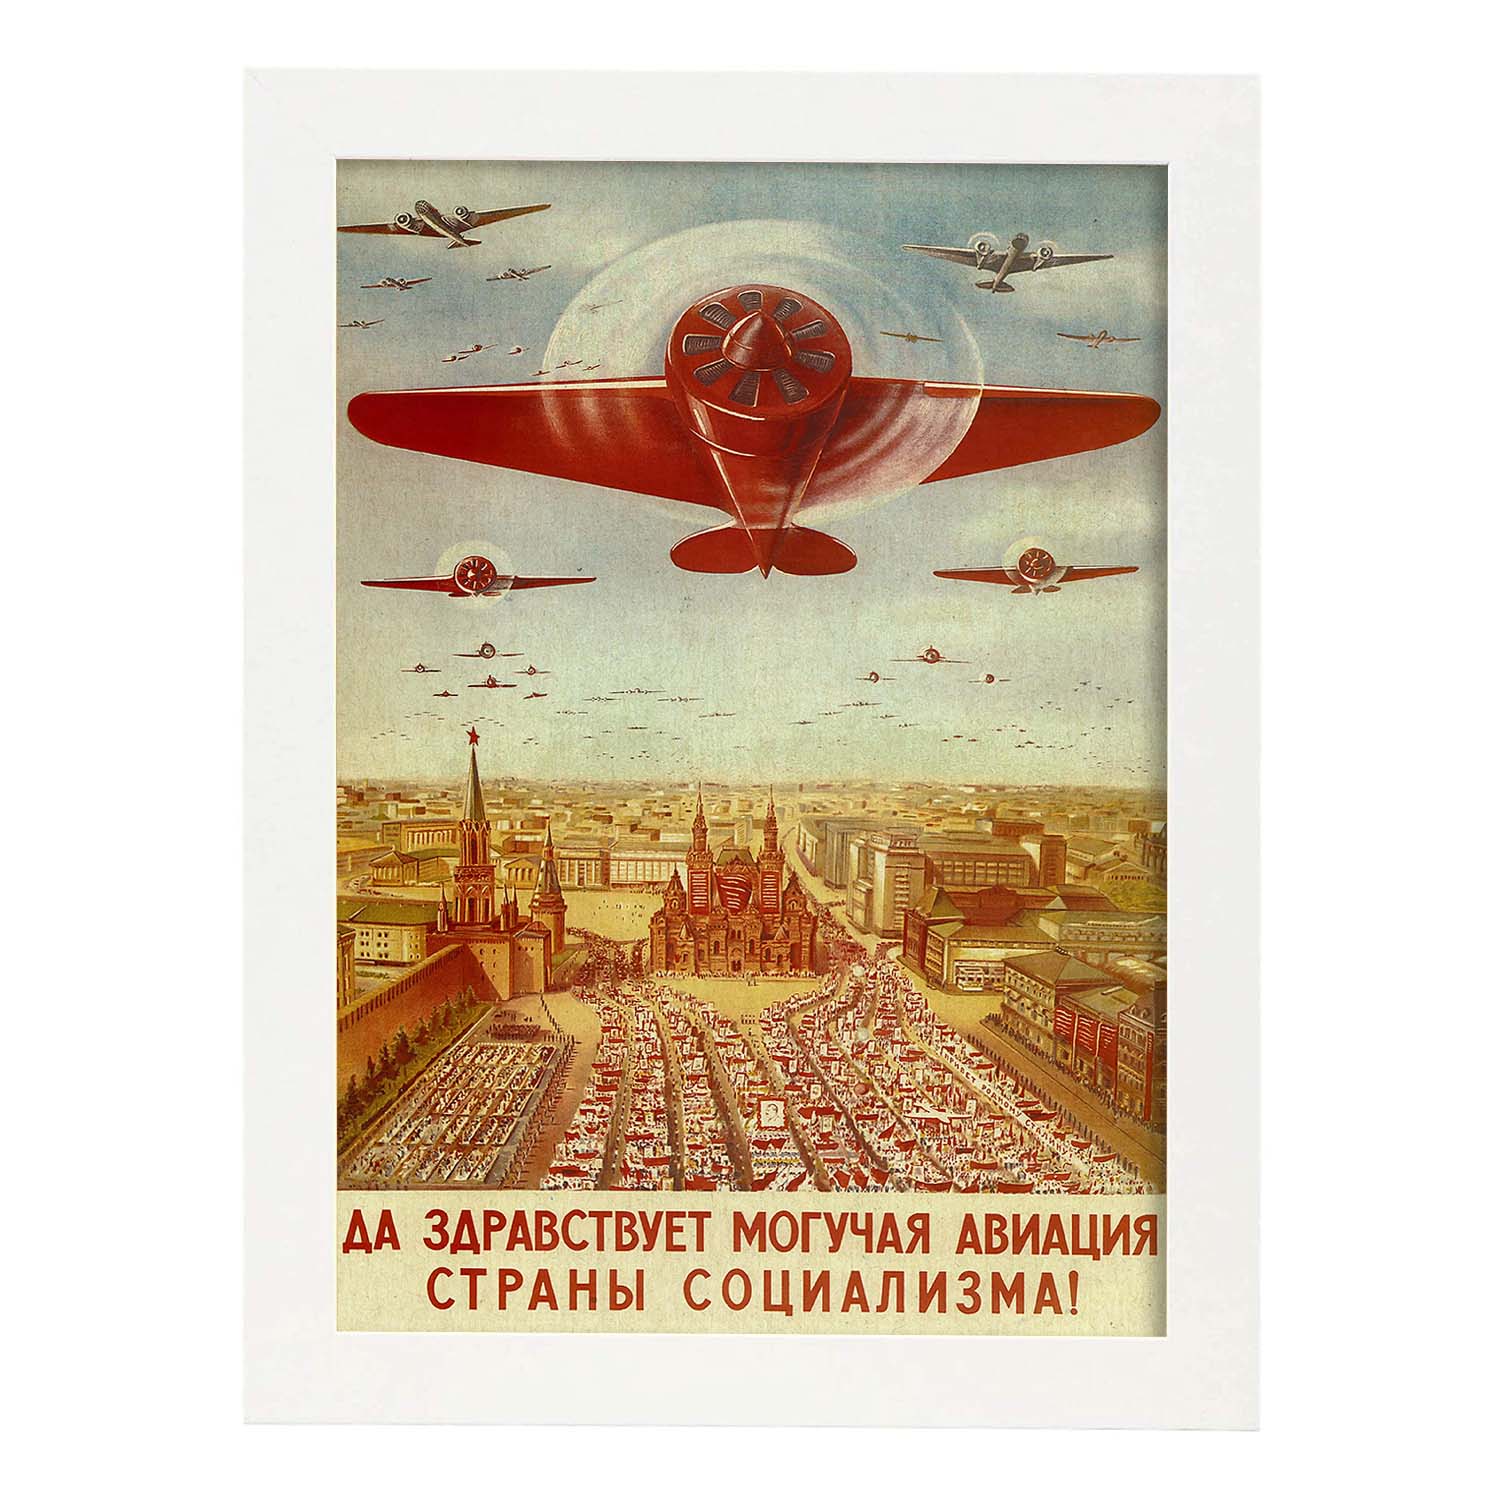 Poster vintage. Cartel vintage de propaganda de aviación rusa..-Artwork-Nacnic-A3-Marco Blanco-Nacnic Estudio SL